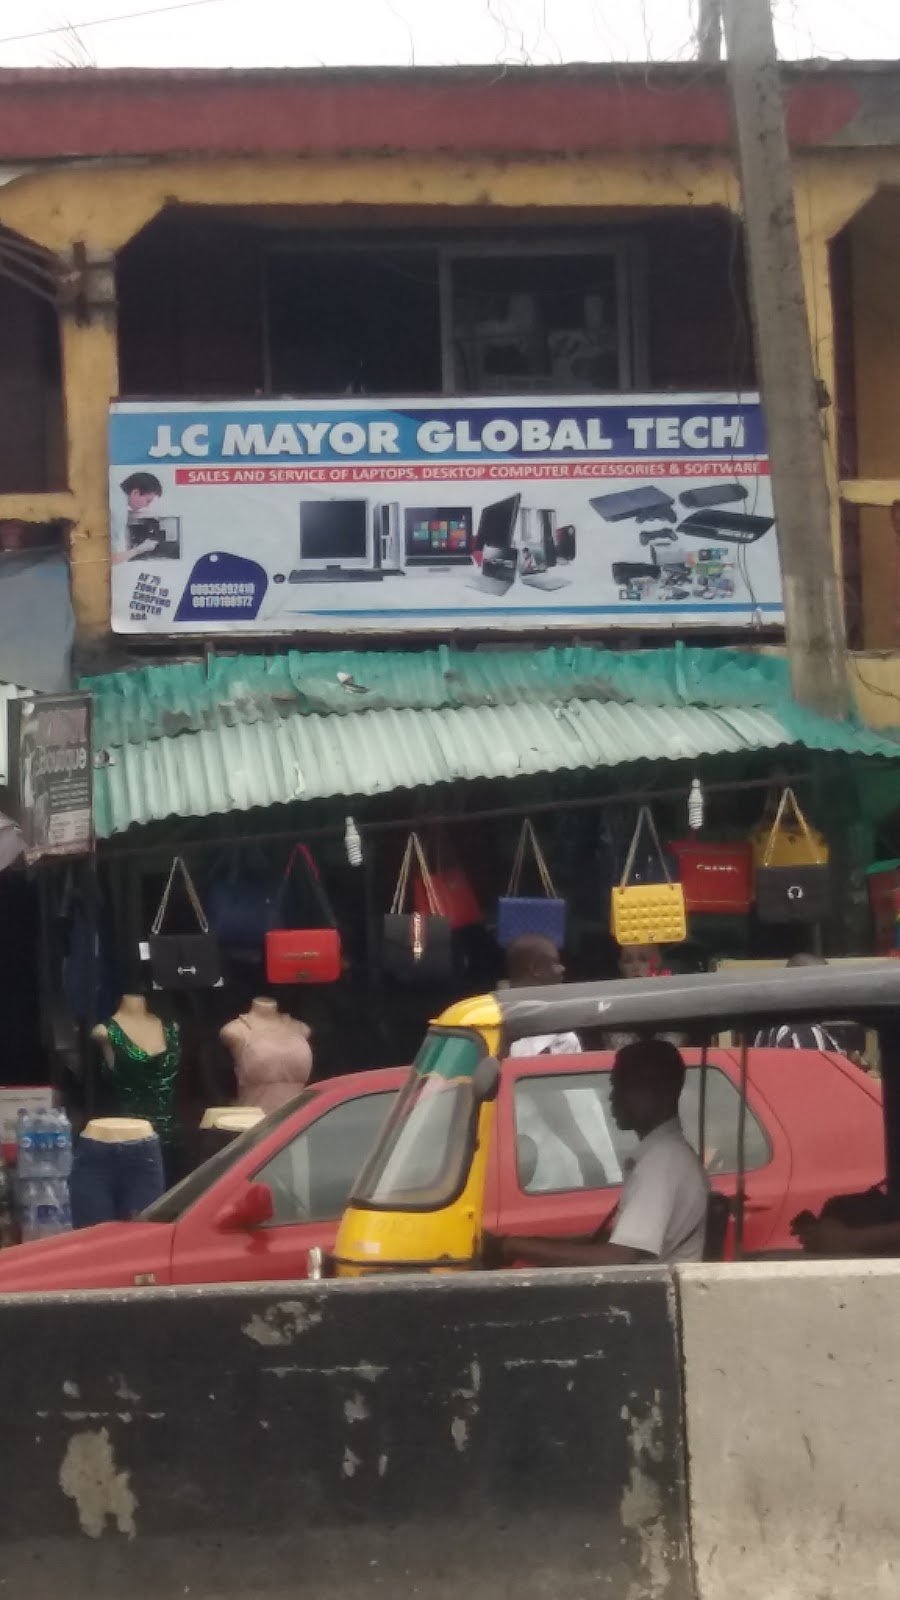 J.C Mayor Global Tech